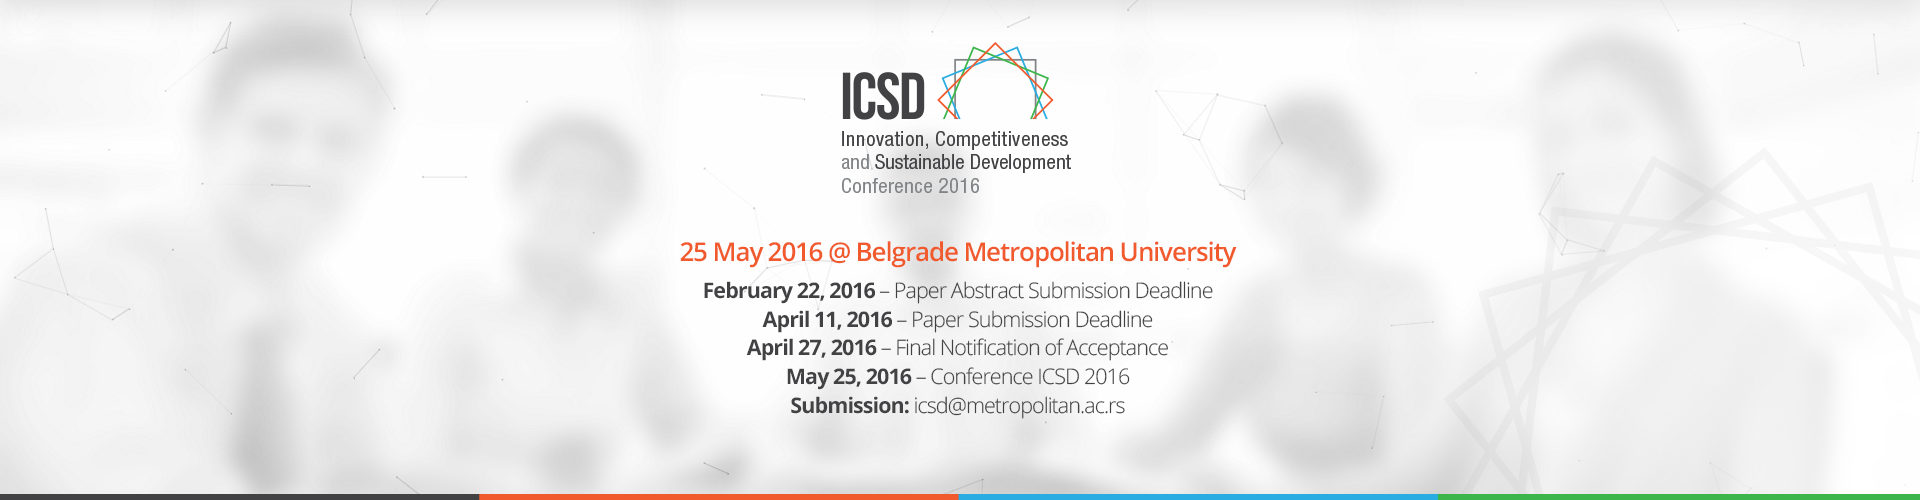 ICSD konferencija – rok za slanje radova 11. april